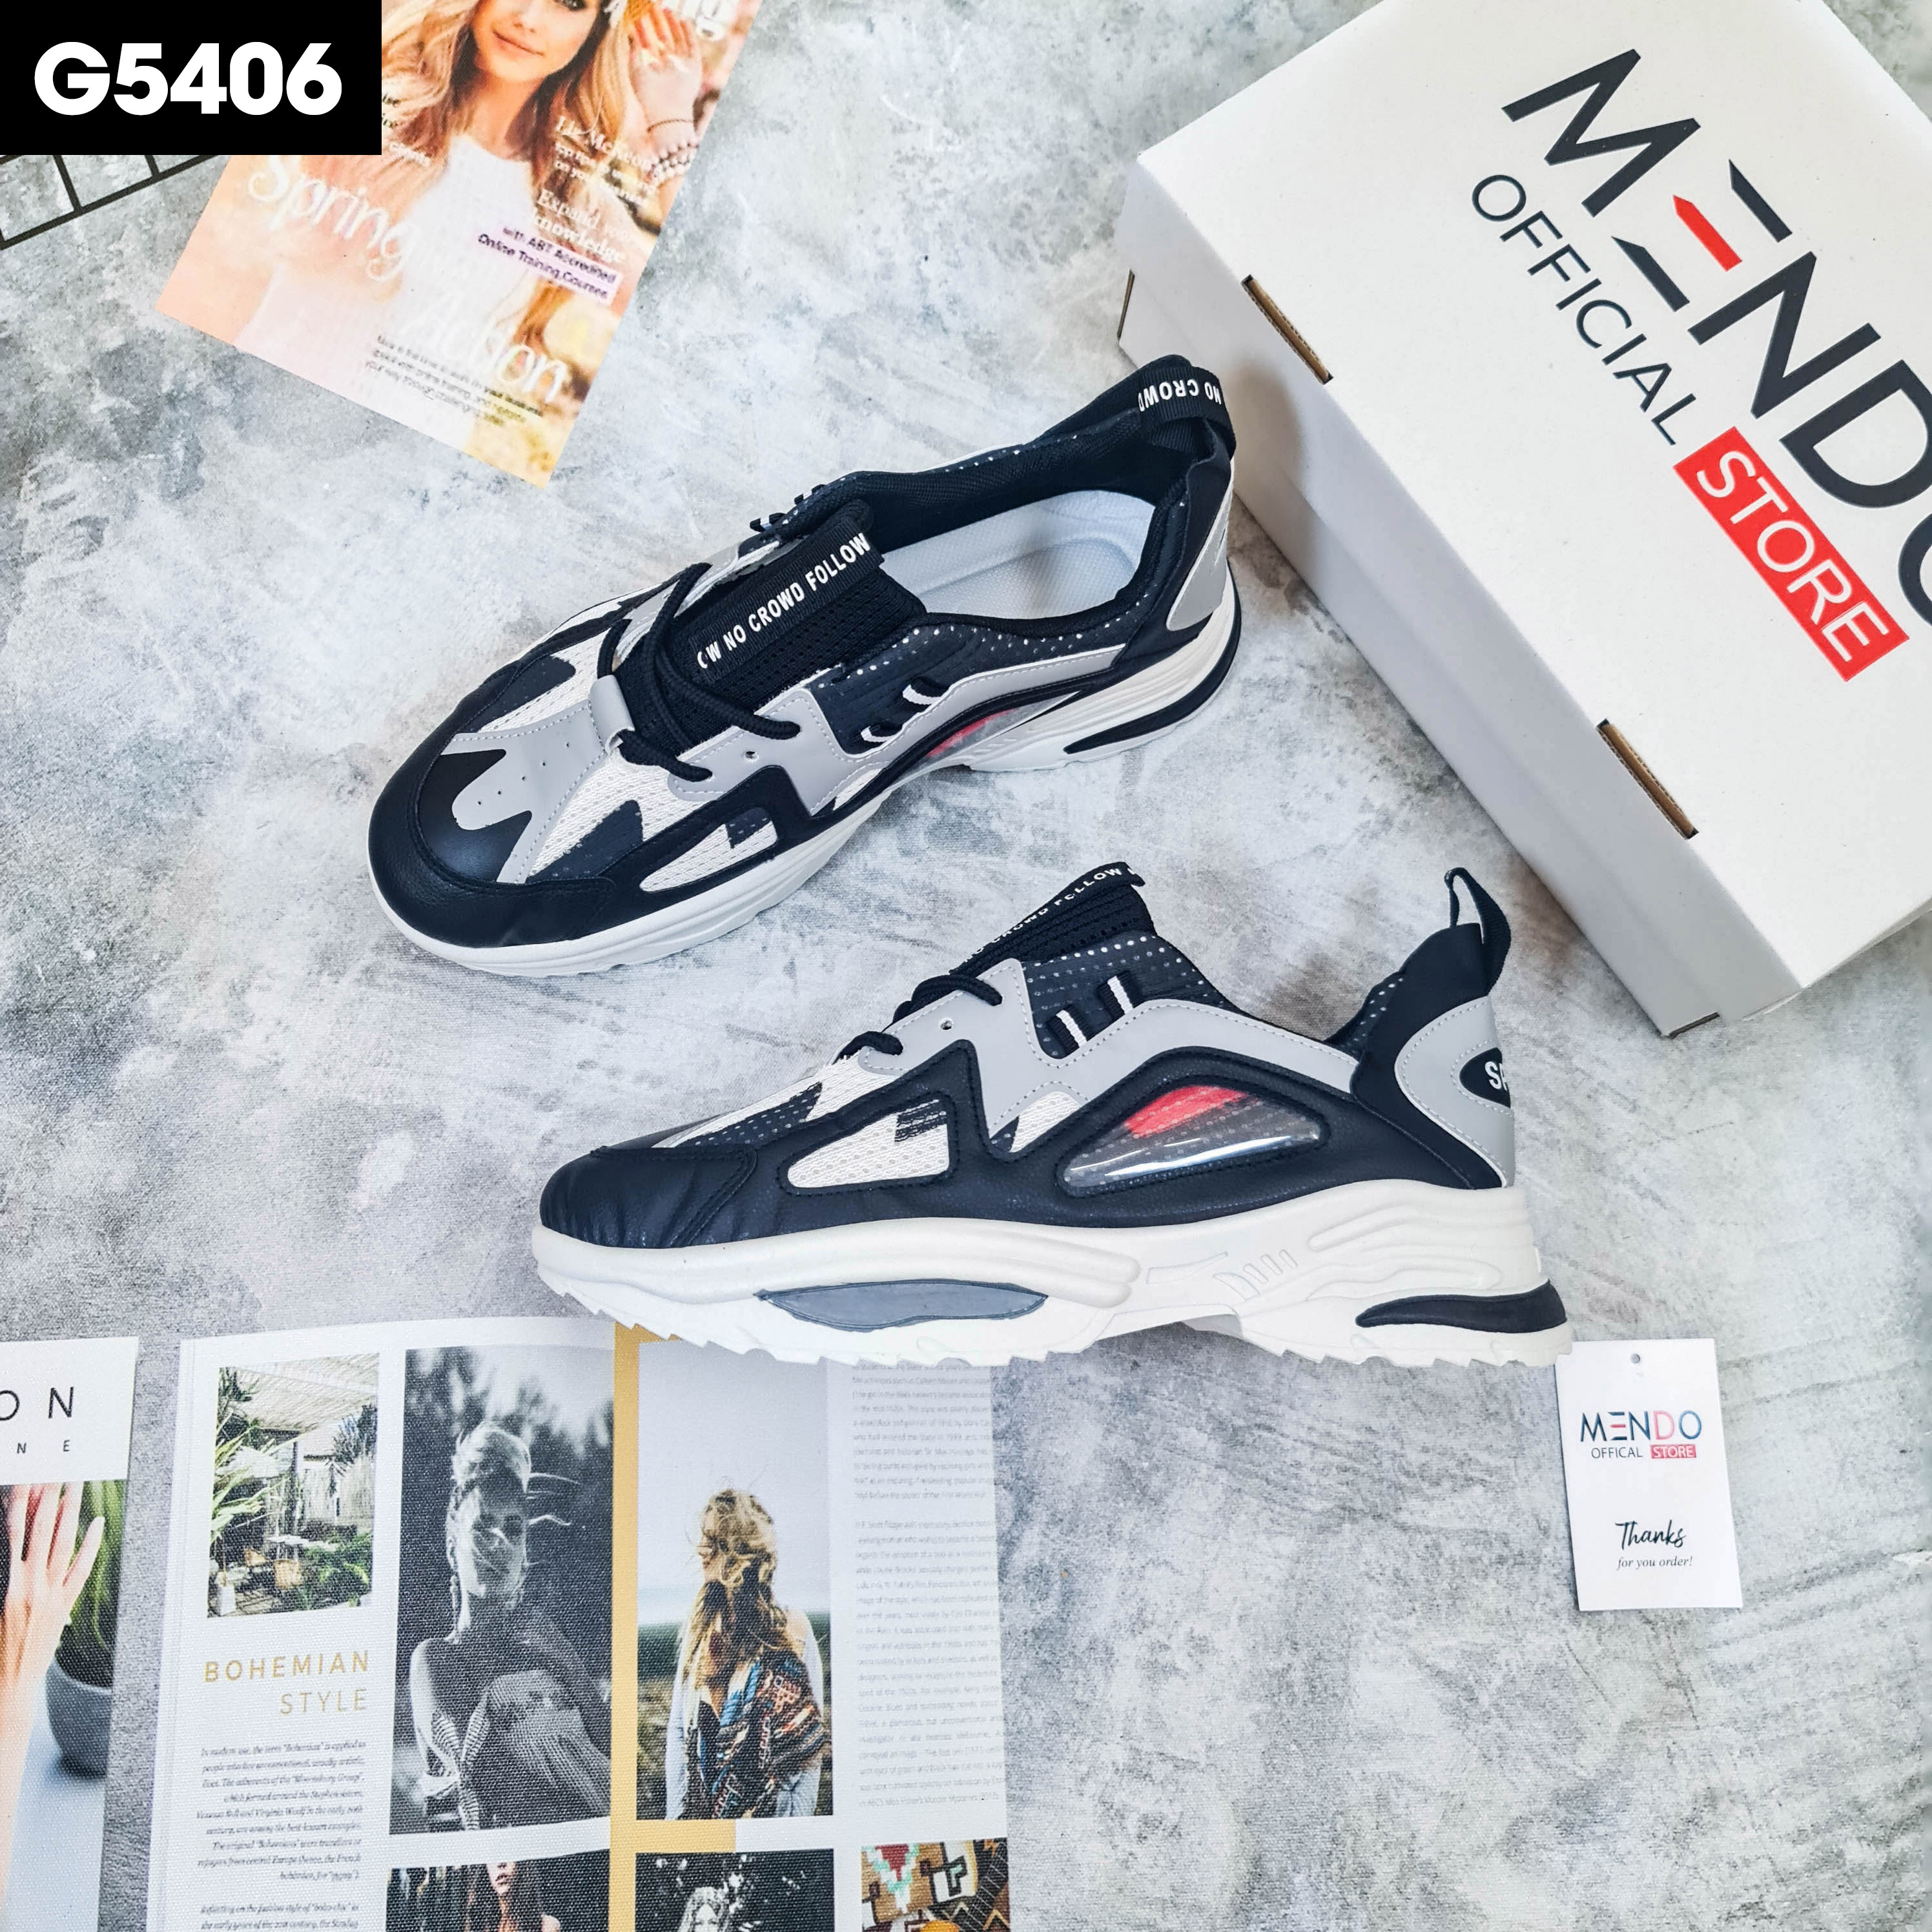 Giày Thể Thao Nam MENDO - Giày Sneaker Màu Đen - Trắng, Phù Hợp Mọi Lứa Tuổi, Ôm Chân - G5406